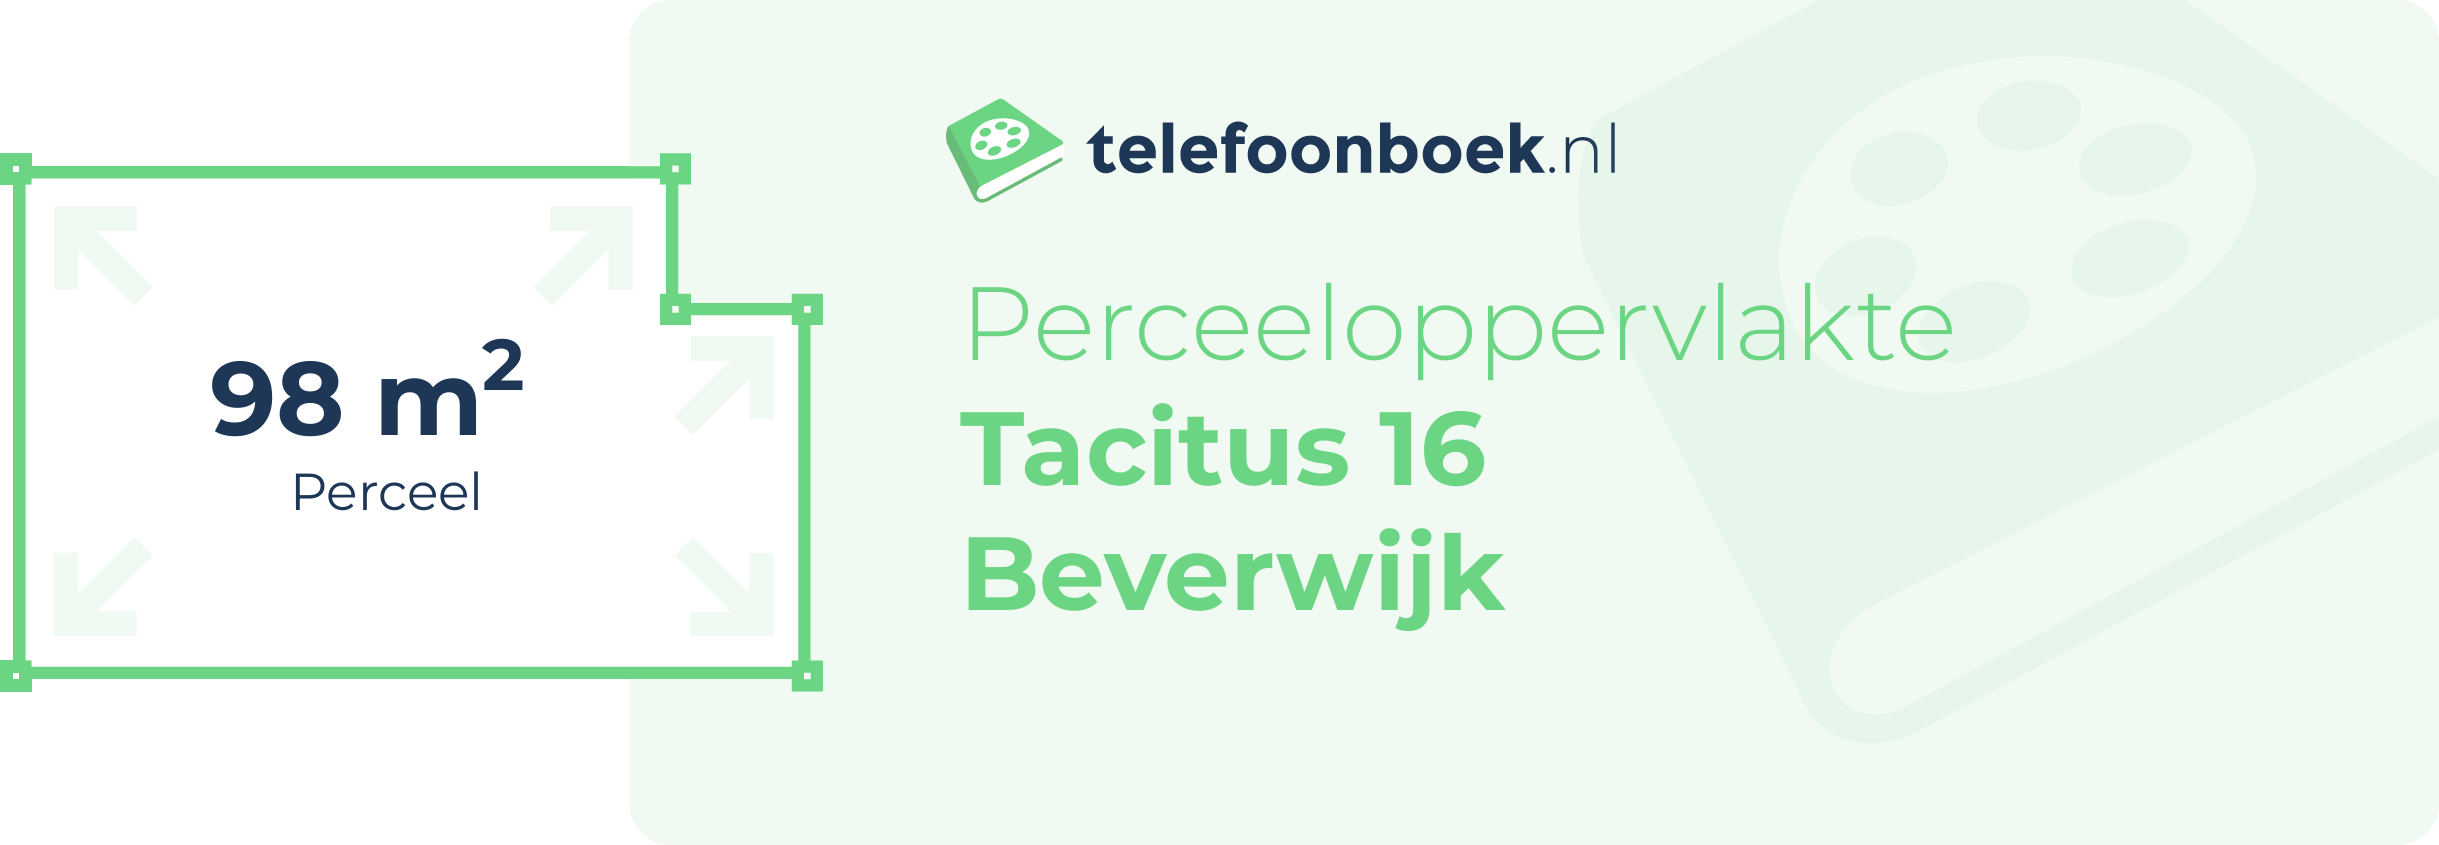 Perceeloppervlakte Tacitus 16 Beverwijk